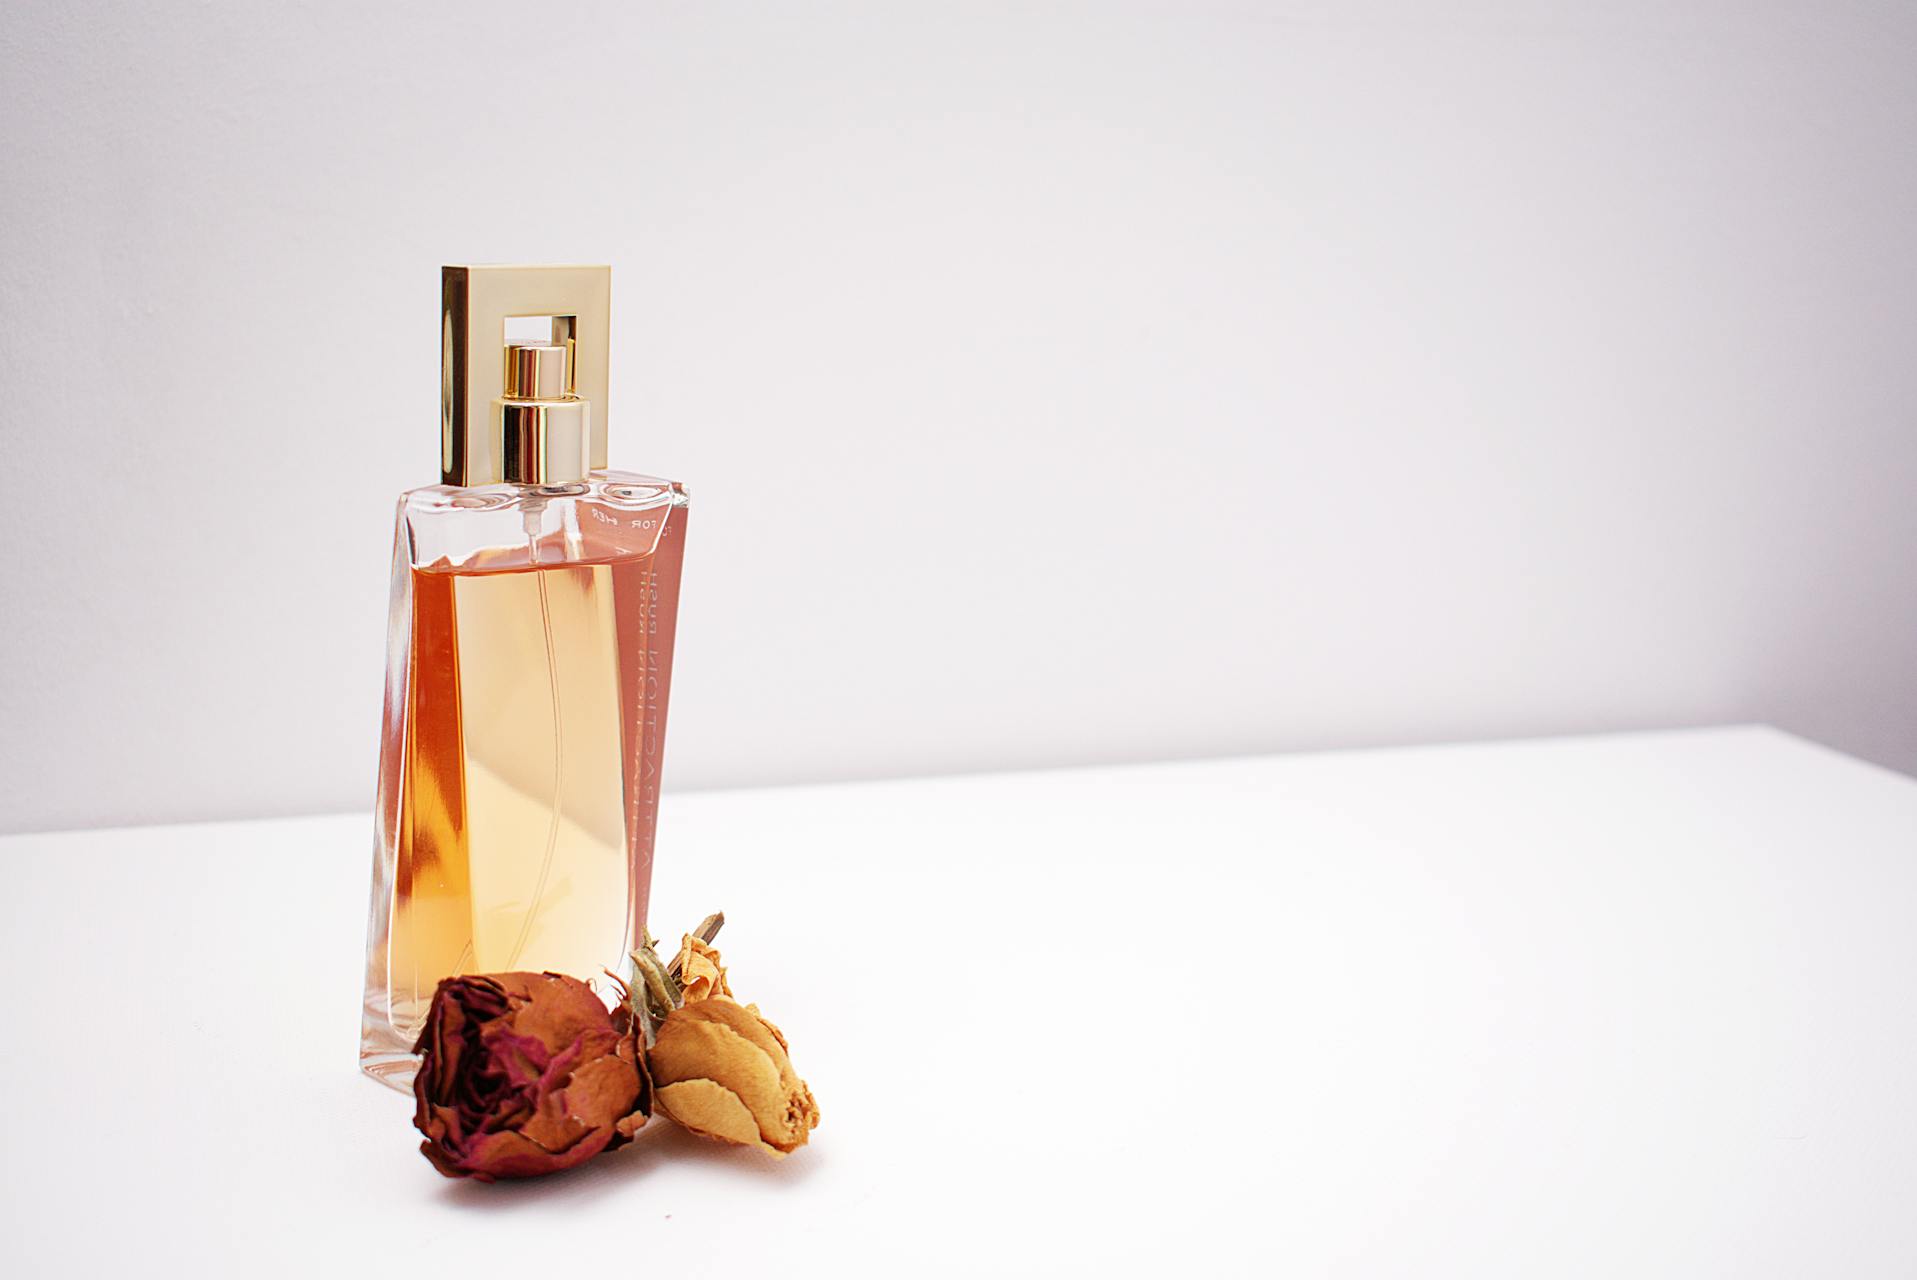 Eau de parfum, eau de toillet, body splash: diferenças entre perfumes